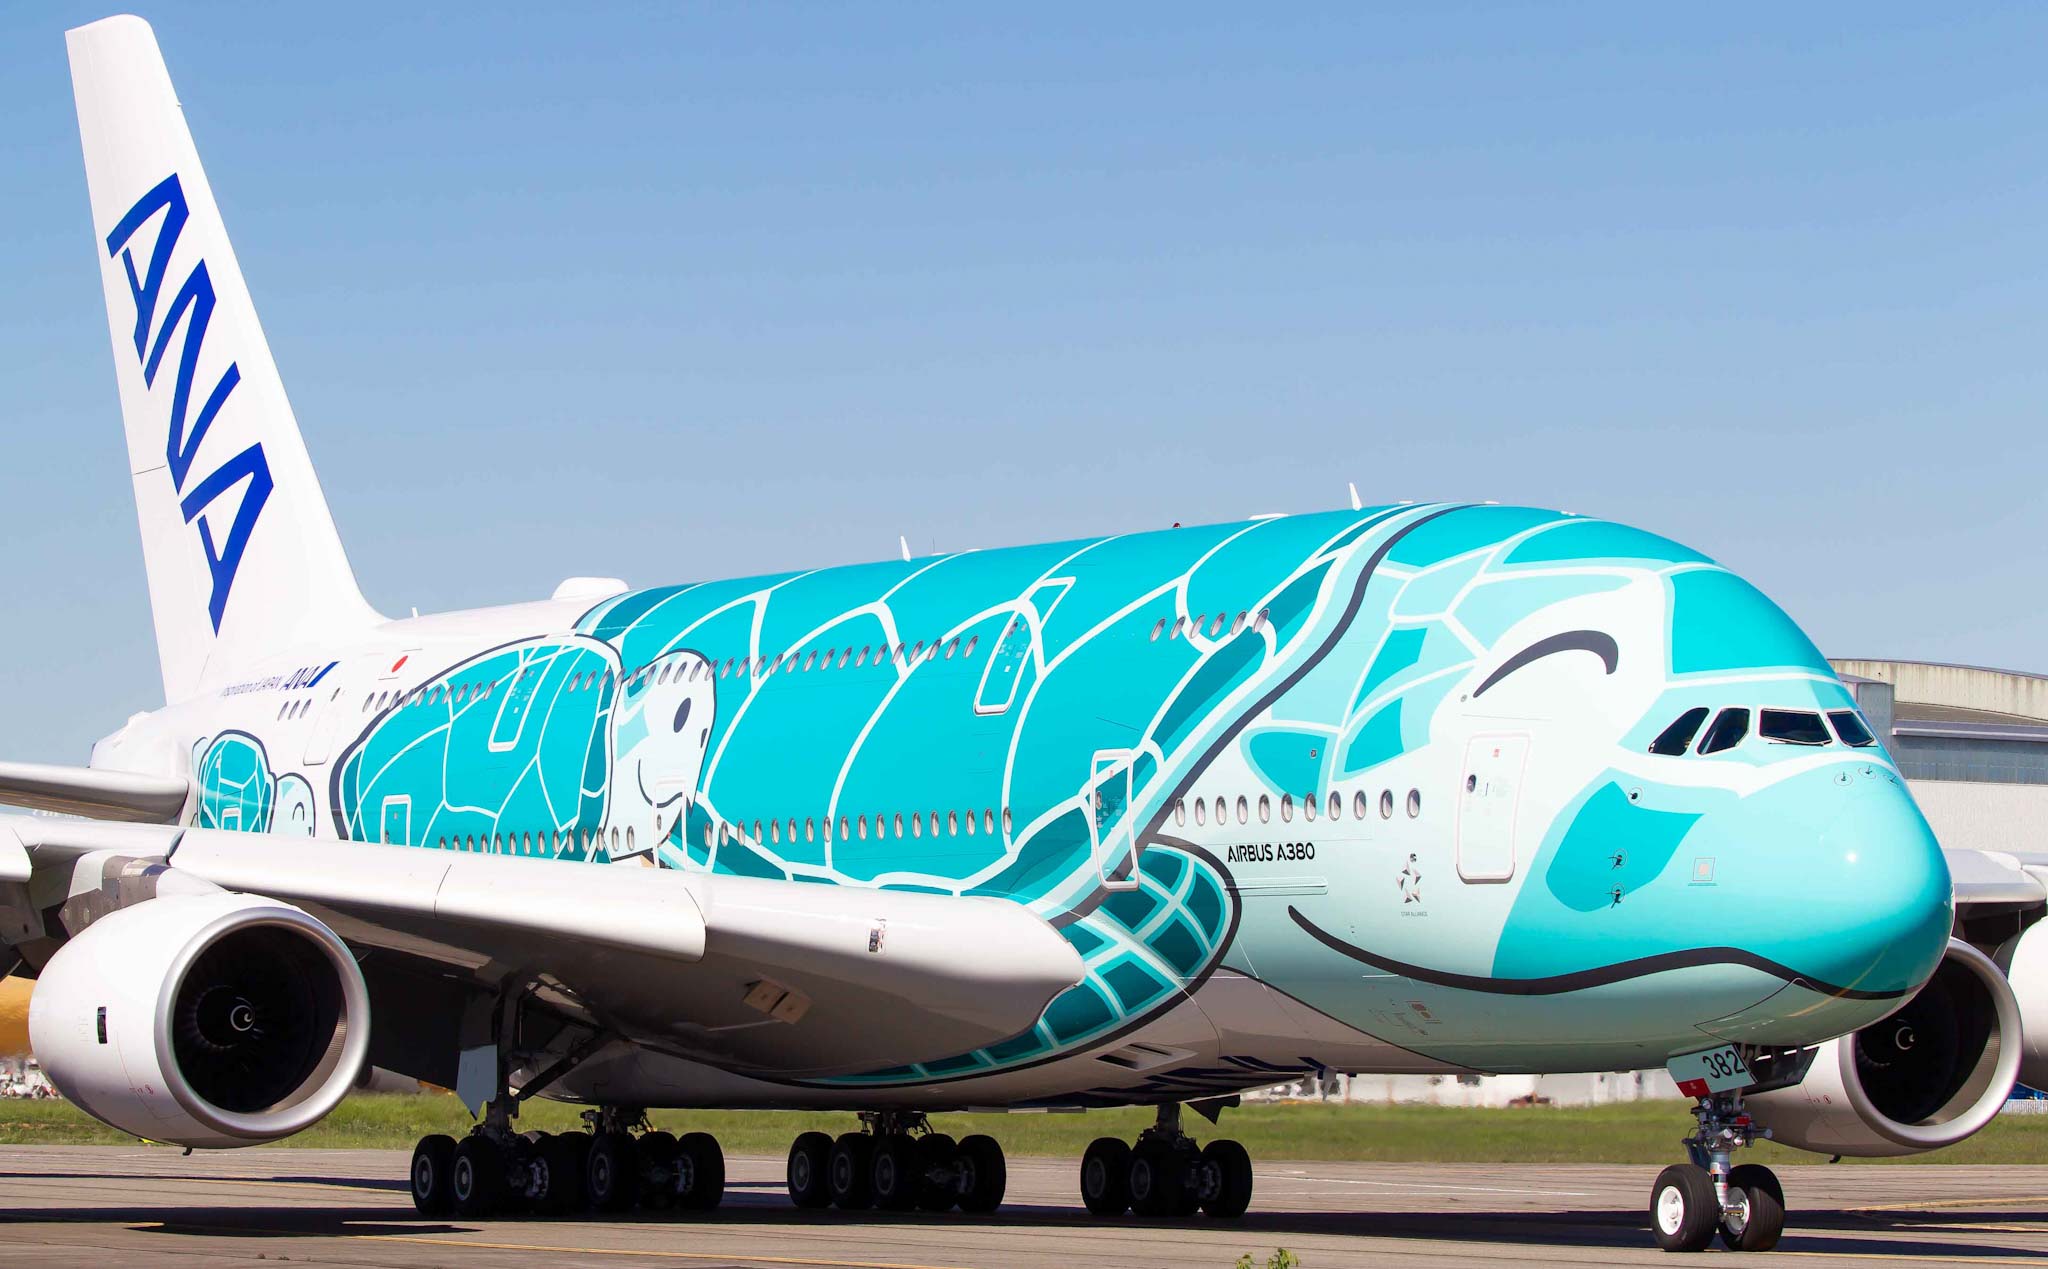 Airbus chấm dứt chương trình A380, tiếp tục hỗ trợ các hãng đang và có ý định khai thác